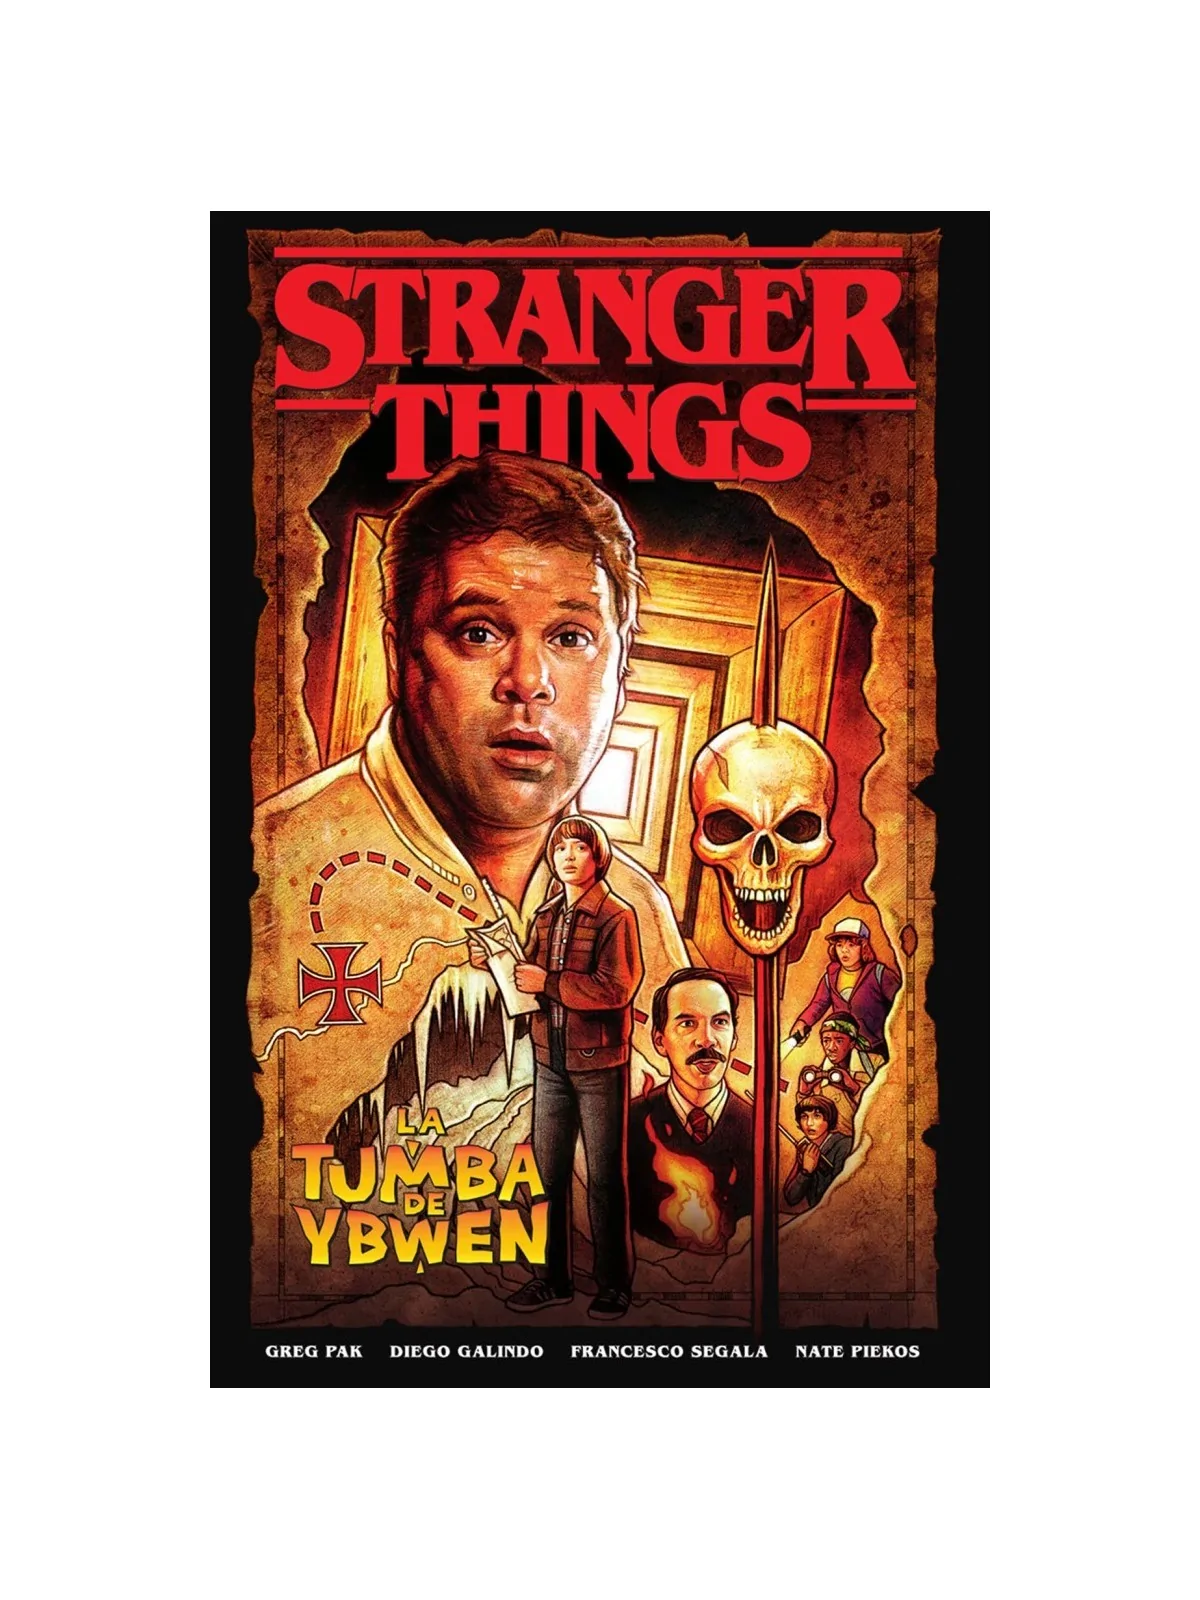 Comprar Stranger Things 05: La Tumba de Ybwen barato al mejor precio 1